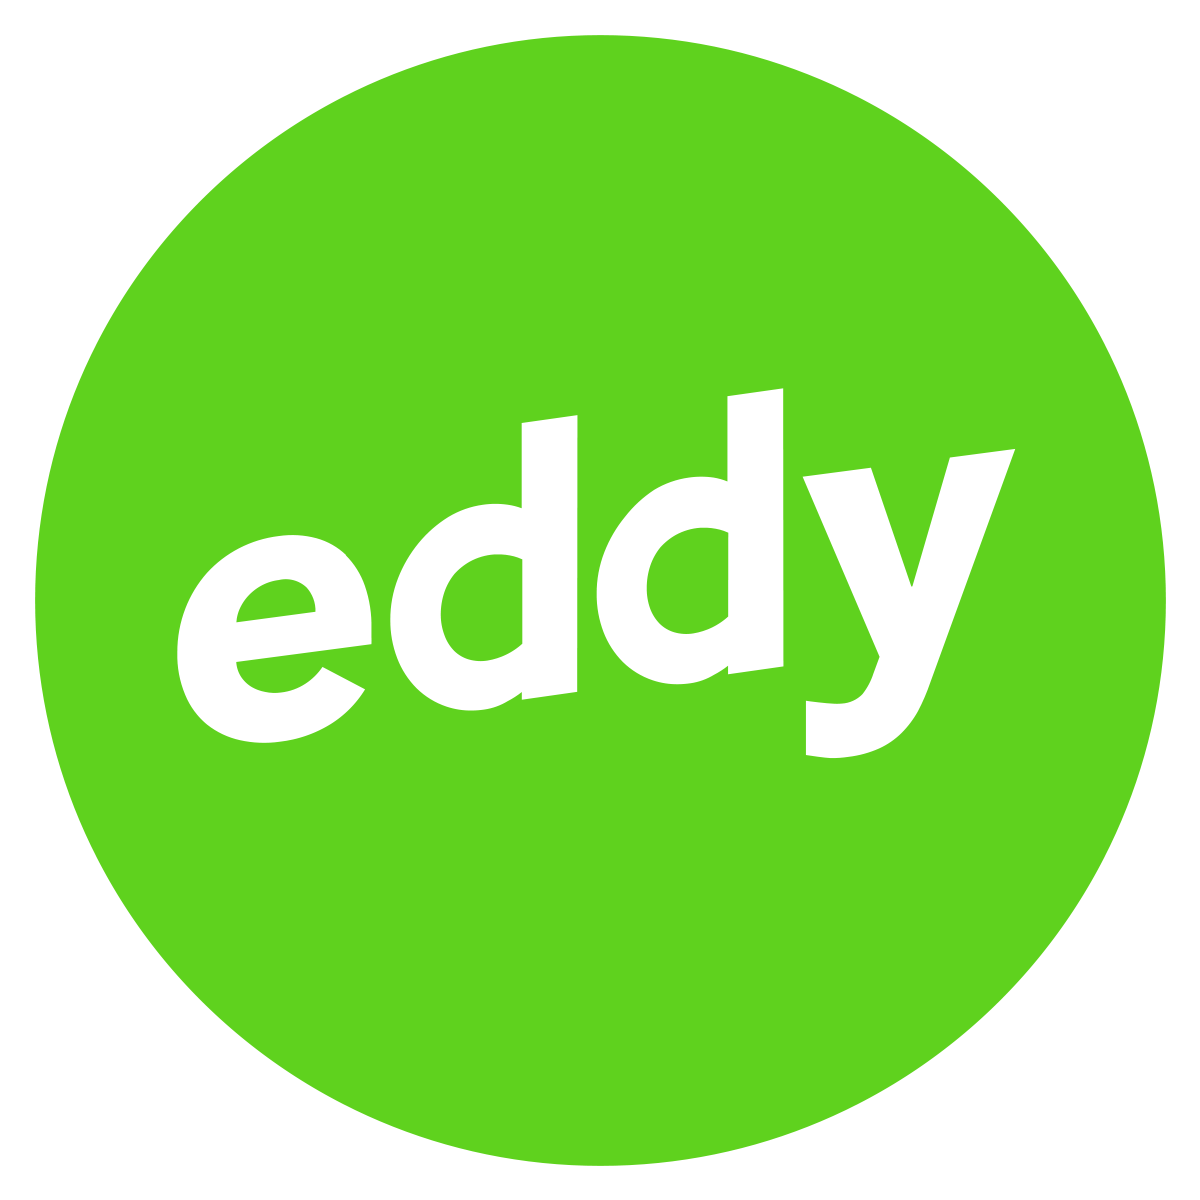 Eddy logo.